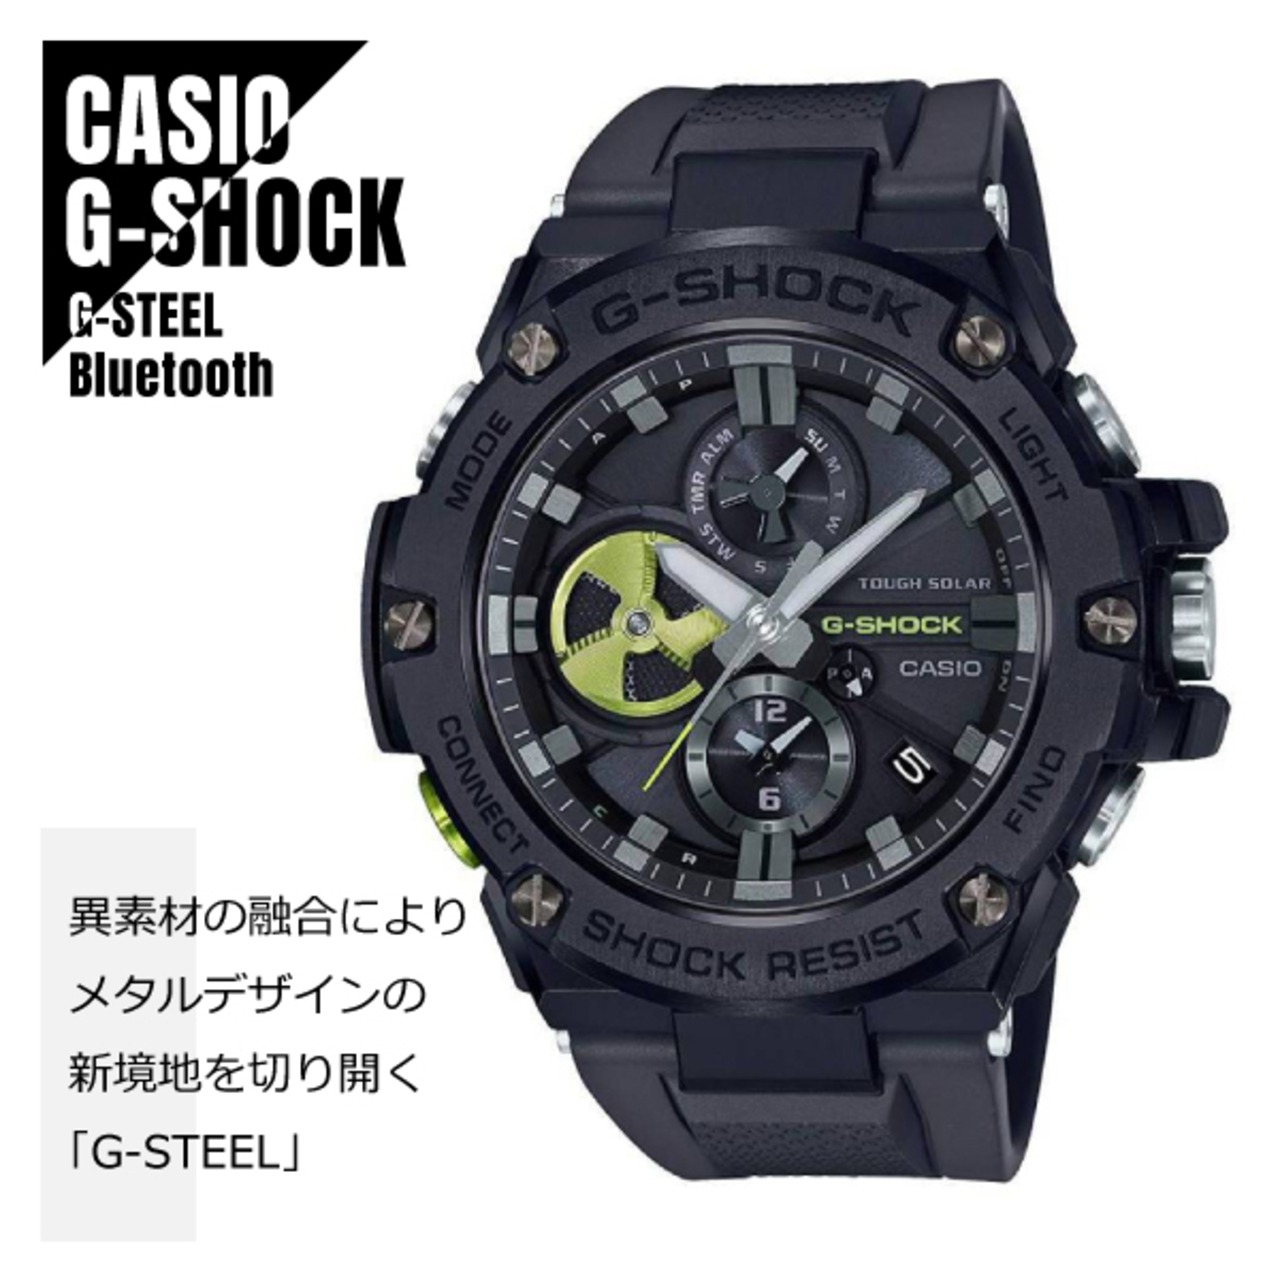 【即納】CASIO カシオ G-SHOCK Gショック G-STEEL Gスチール スマートフォンリンク Bluetooth通信 GST-B100B-1A3 ブラック×グリーン 腕時計 メンズ